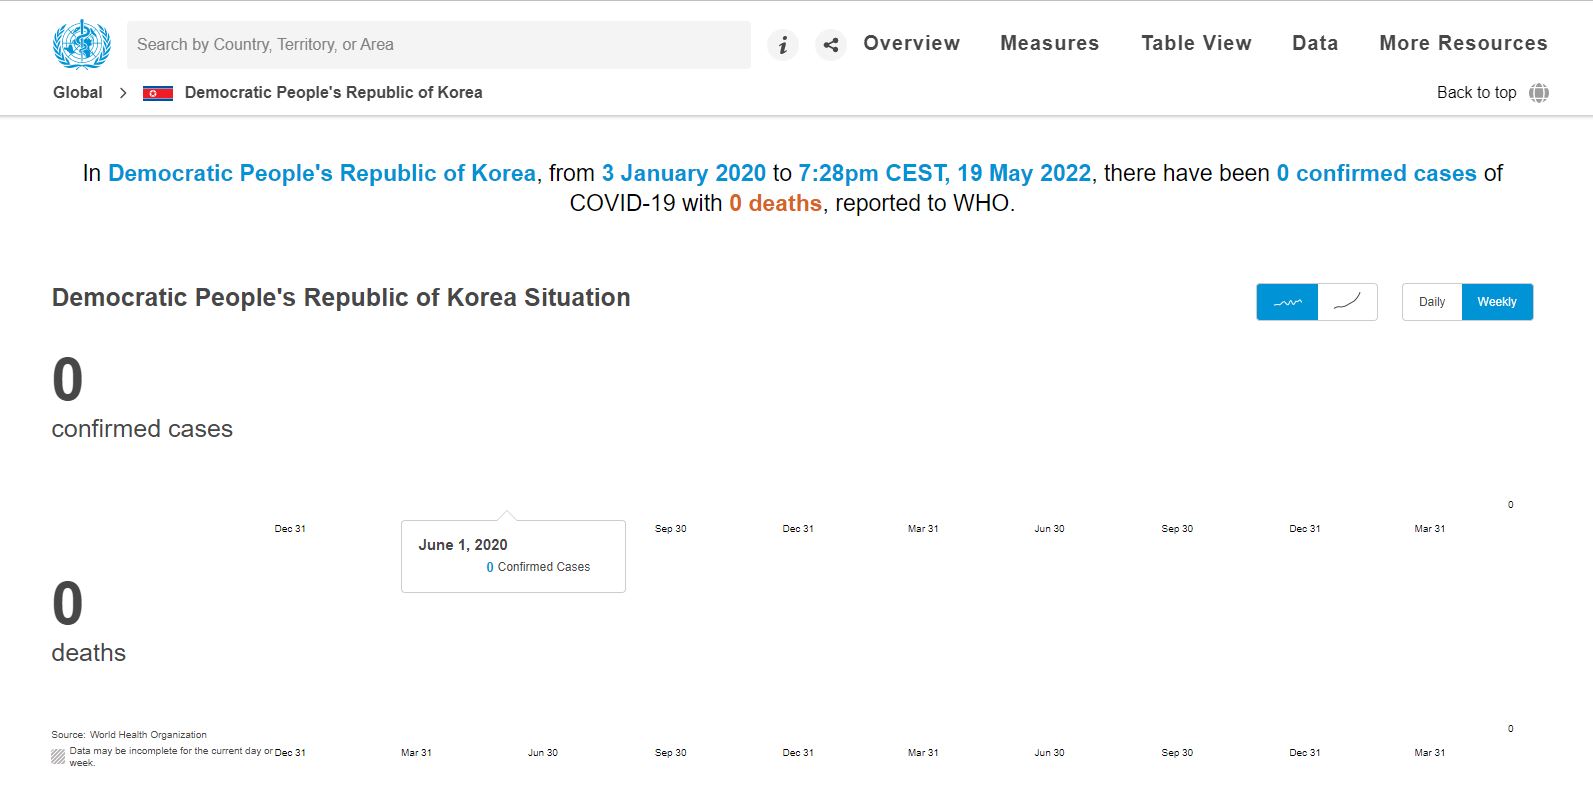 세계보건기구(WHO) 홈페이지에 게재된 19일까지의 북한 코로나19 현황. 확진자와 사망자 수가 ‘0명’으로 되어 있다. 북한은 WHO를 비롯한 국제기구에 코로나19 현재 상황을 보고하지 않고 있다. (화면=세계보건기구(WHO) 홈페이지)